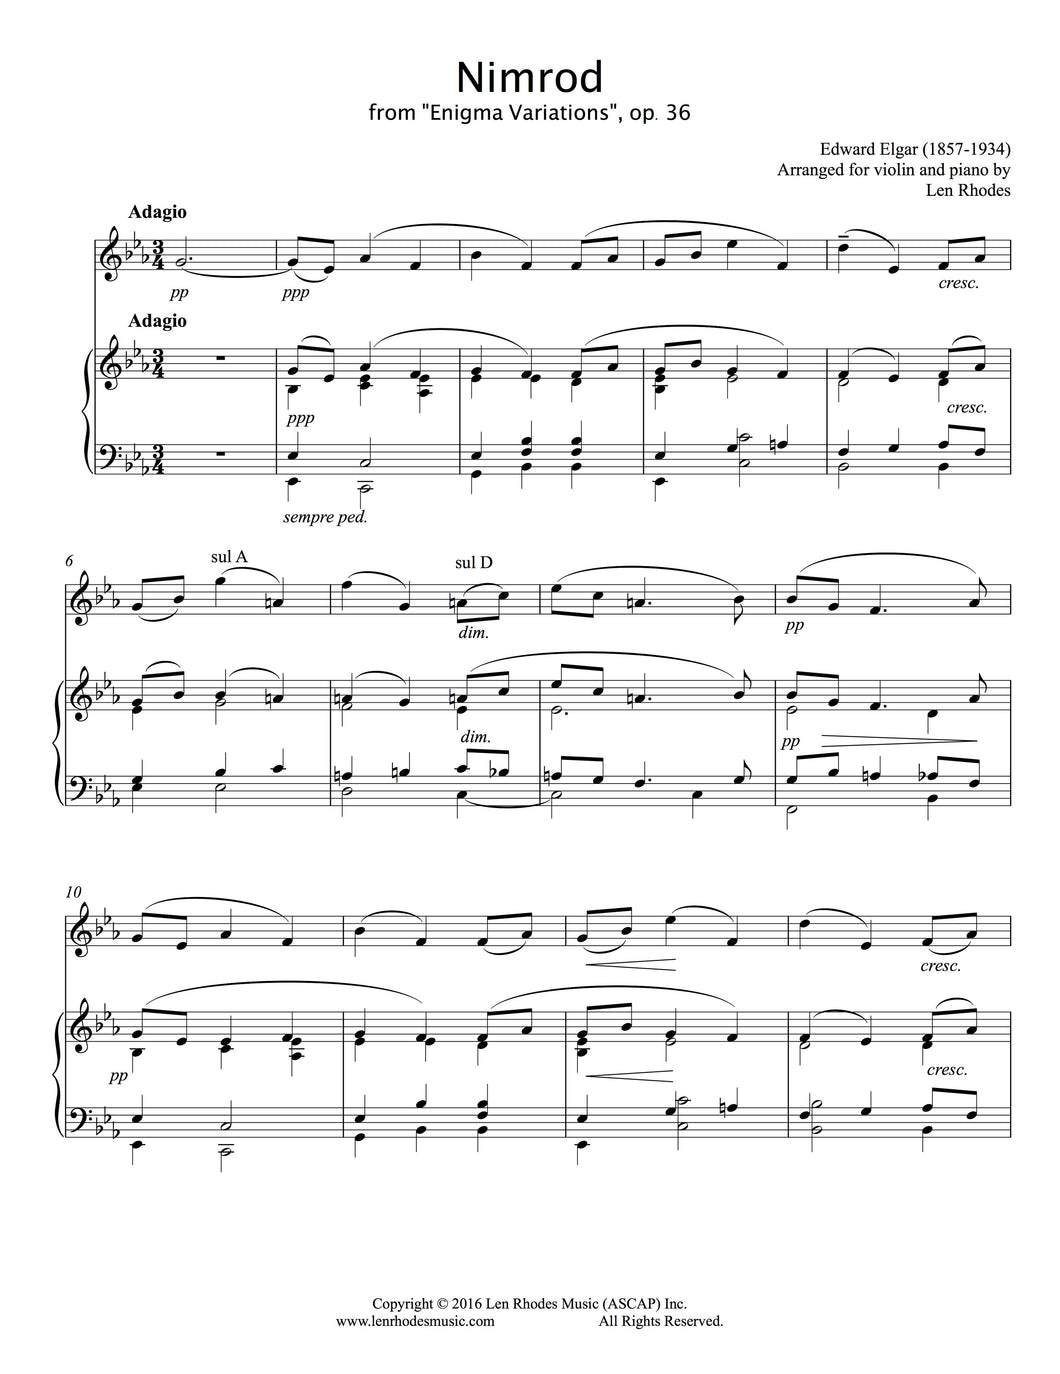 Nimrod, Enigma Variations, Elgar - Violin and Piano